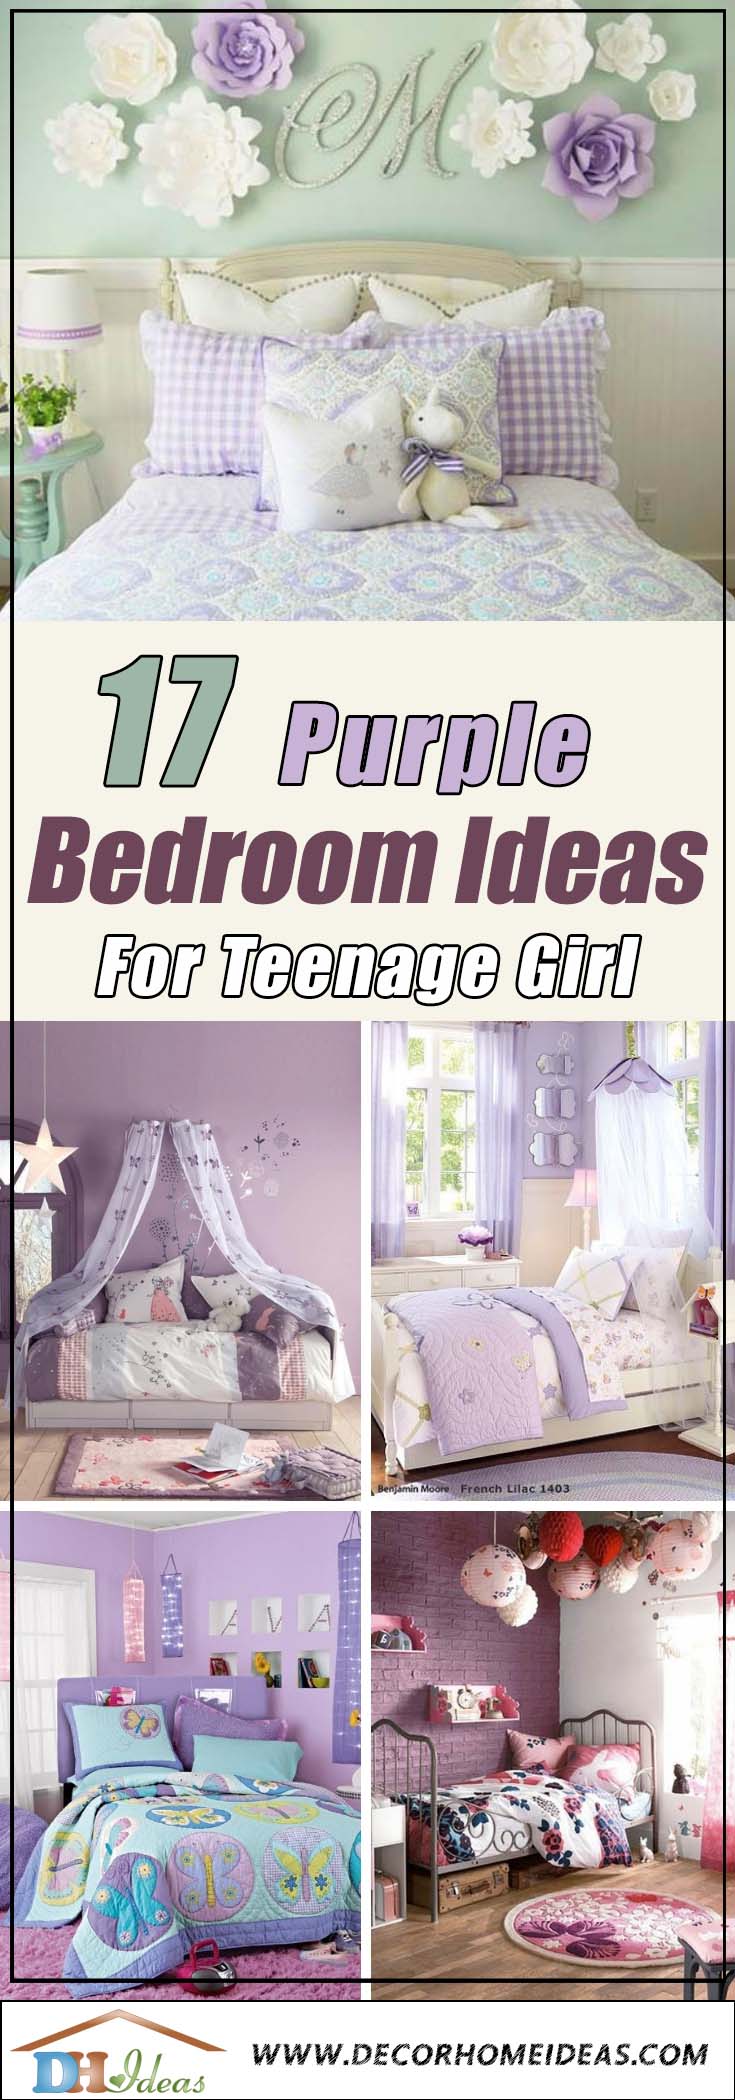 17 Purple Bedroom Ideas For Teenage Girl #purplebedroom #teenbedroom #girlbedroom #bedroom #homedecor #decorhomeideas